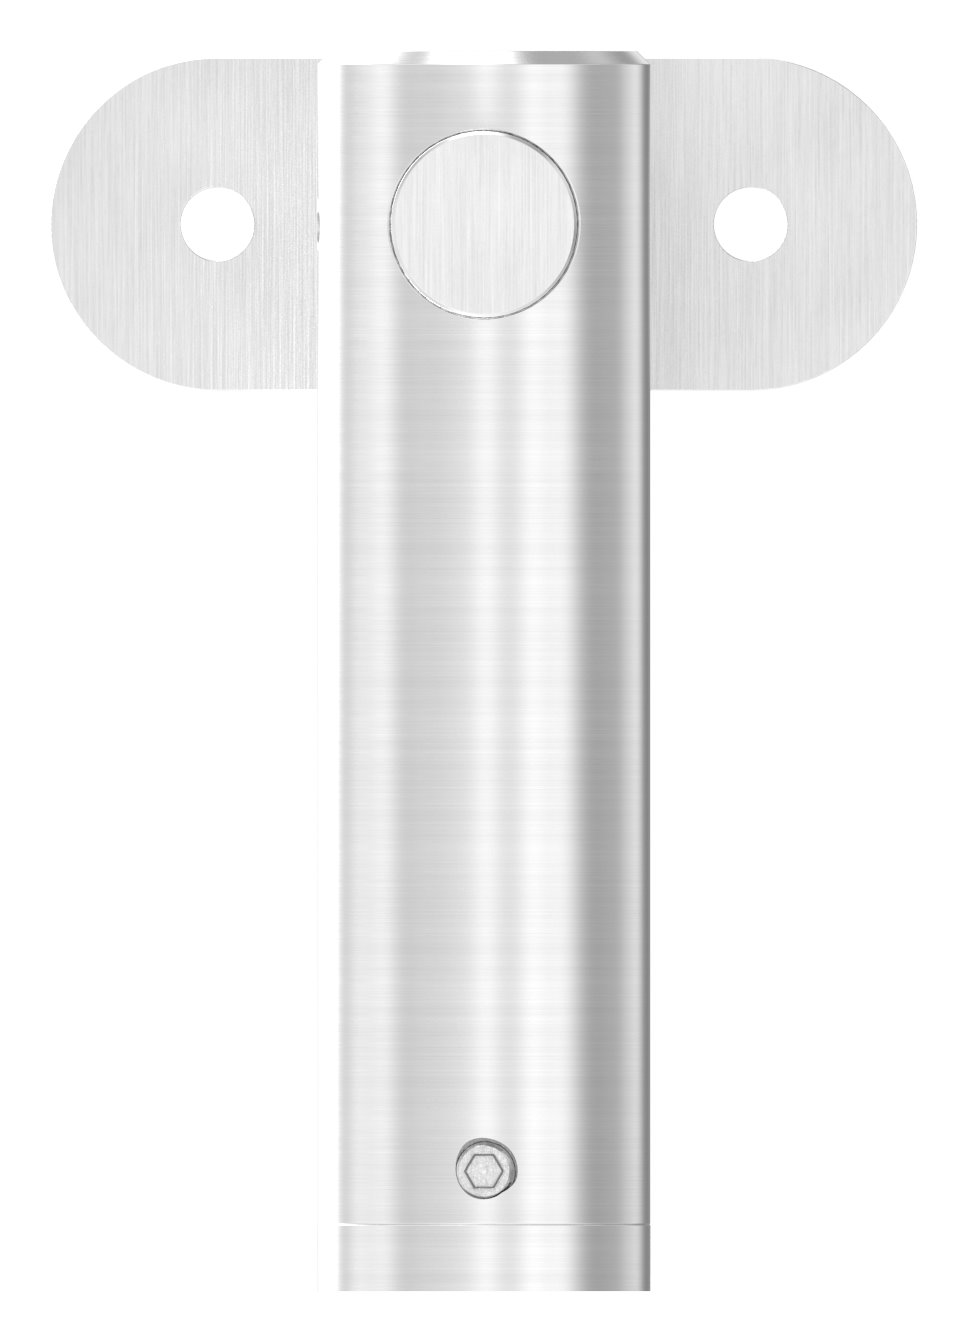 Handlaufhalter mit Handlaufanschlussplatte flach, V2A